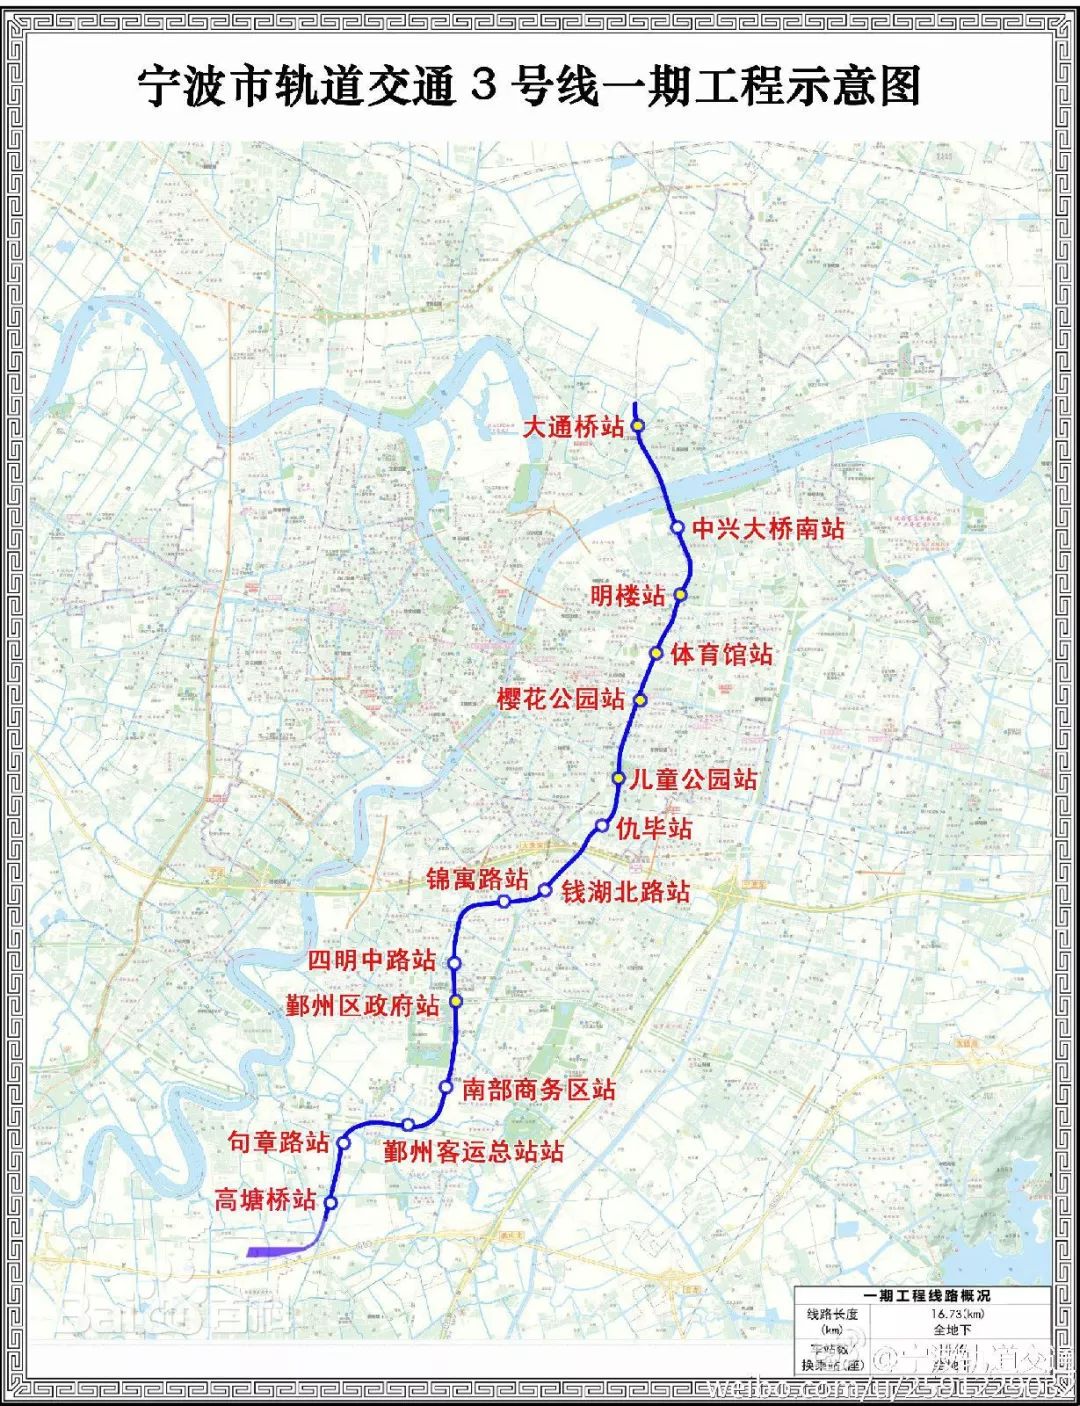 工程线路途经江北,鄞州,奉化三区,也是我市轨道交通远景线网规划的"一